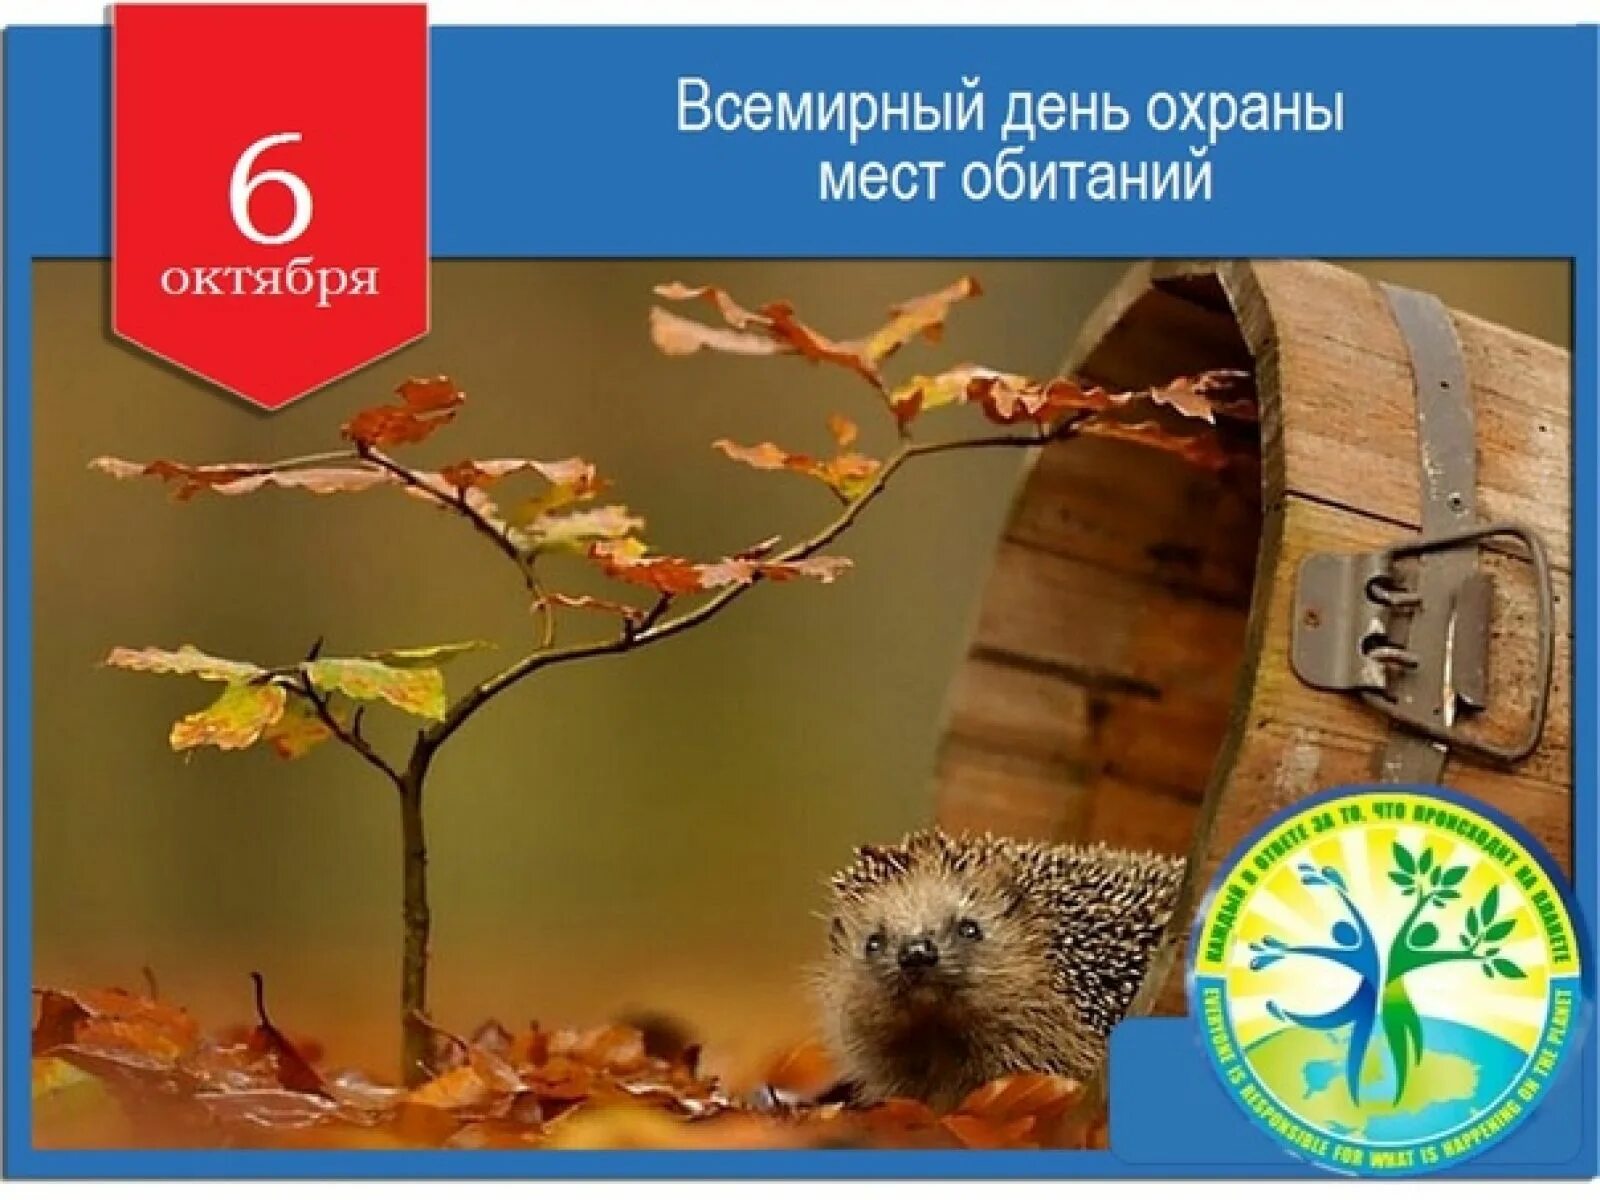 Даты 6 октября. 6 Октября Всемирный день охраны мест обитания. День охраны мест обитания 6 октября. День охраны среды обитания. Всемирный день охраны среды обитания.